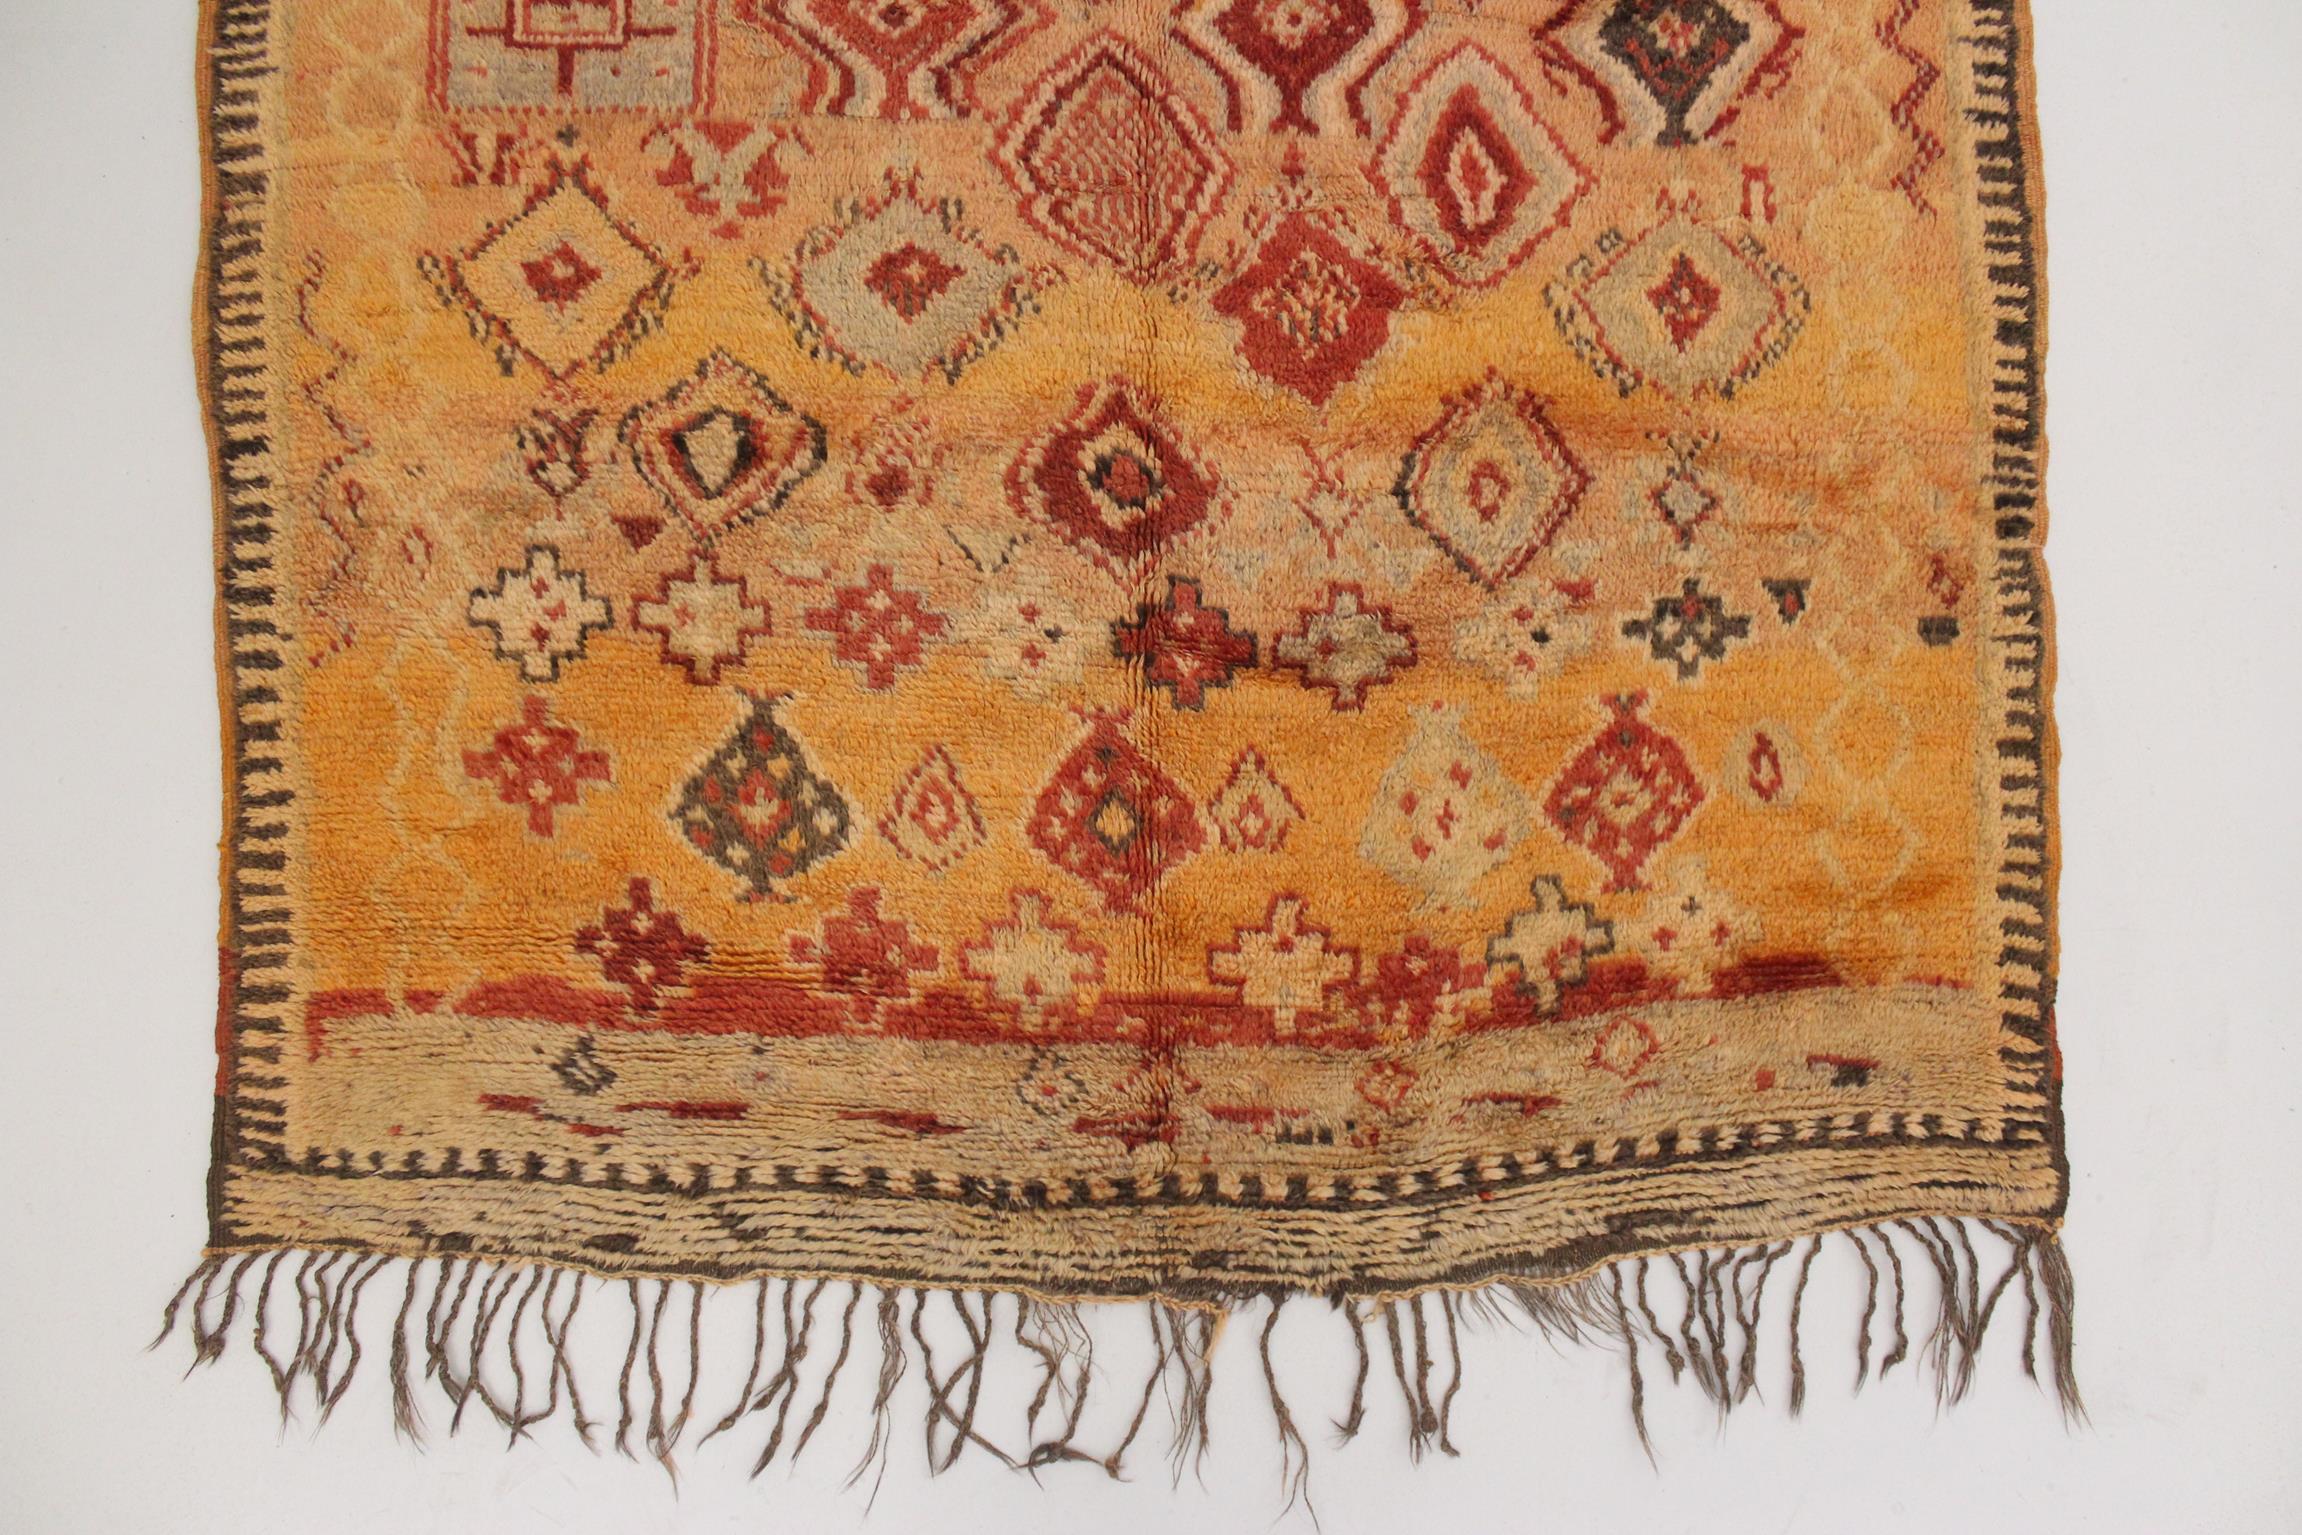 Vintage Moroccan Taznakht rug - Orange/red - 5.2x9.5feet / 161x292cm For Sale 1